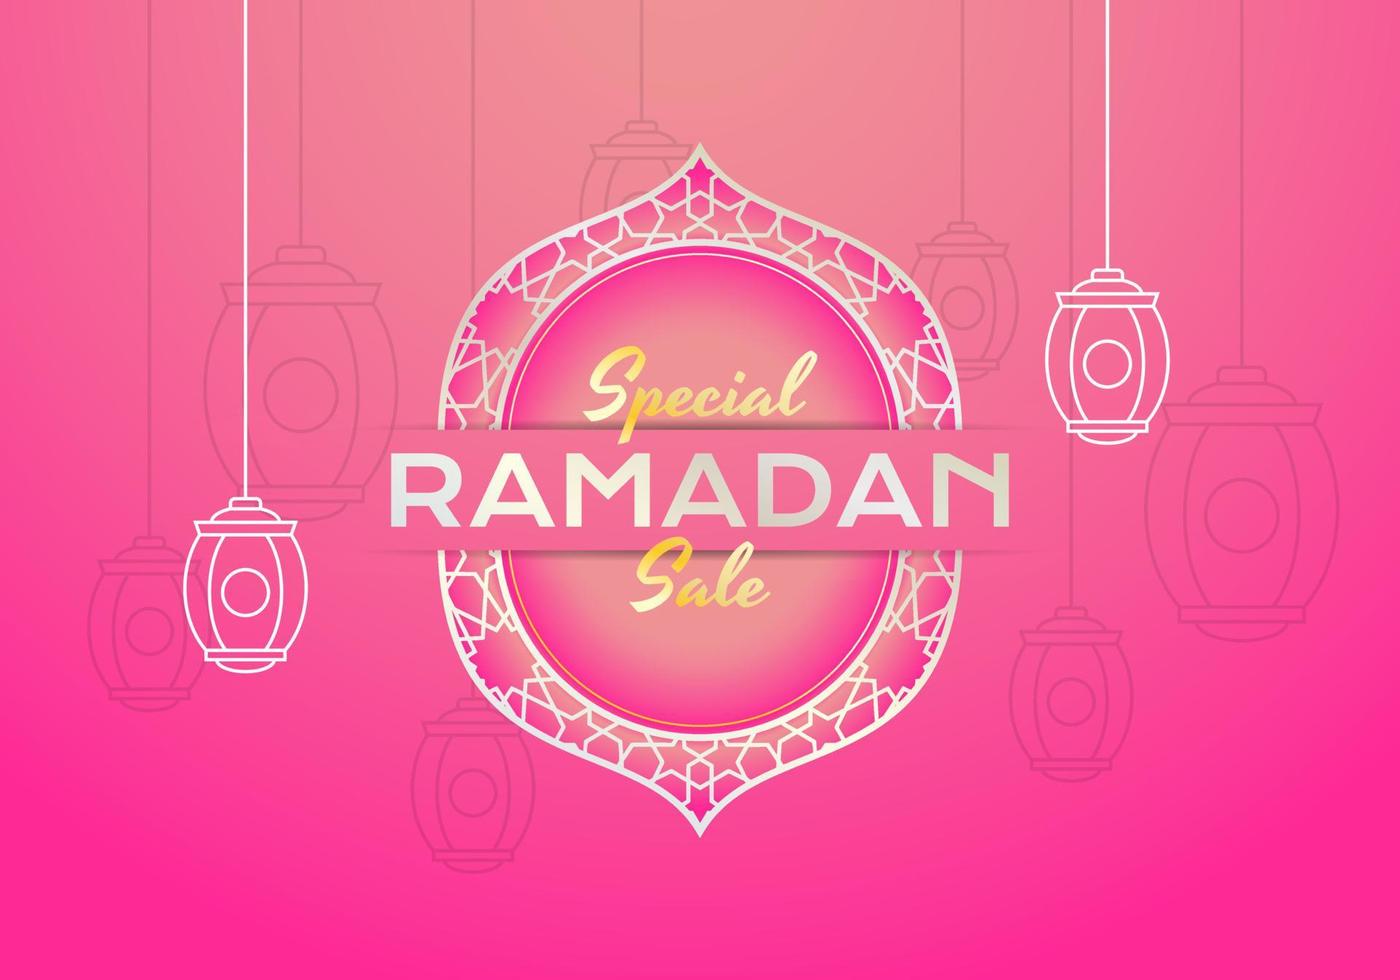 banner de promoção de vendas para liquidação no ramadã vetor